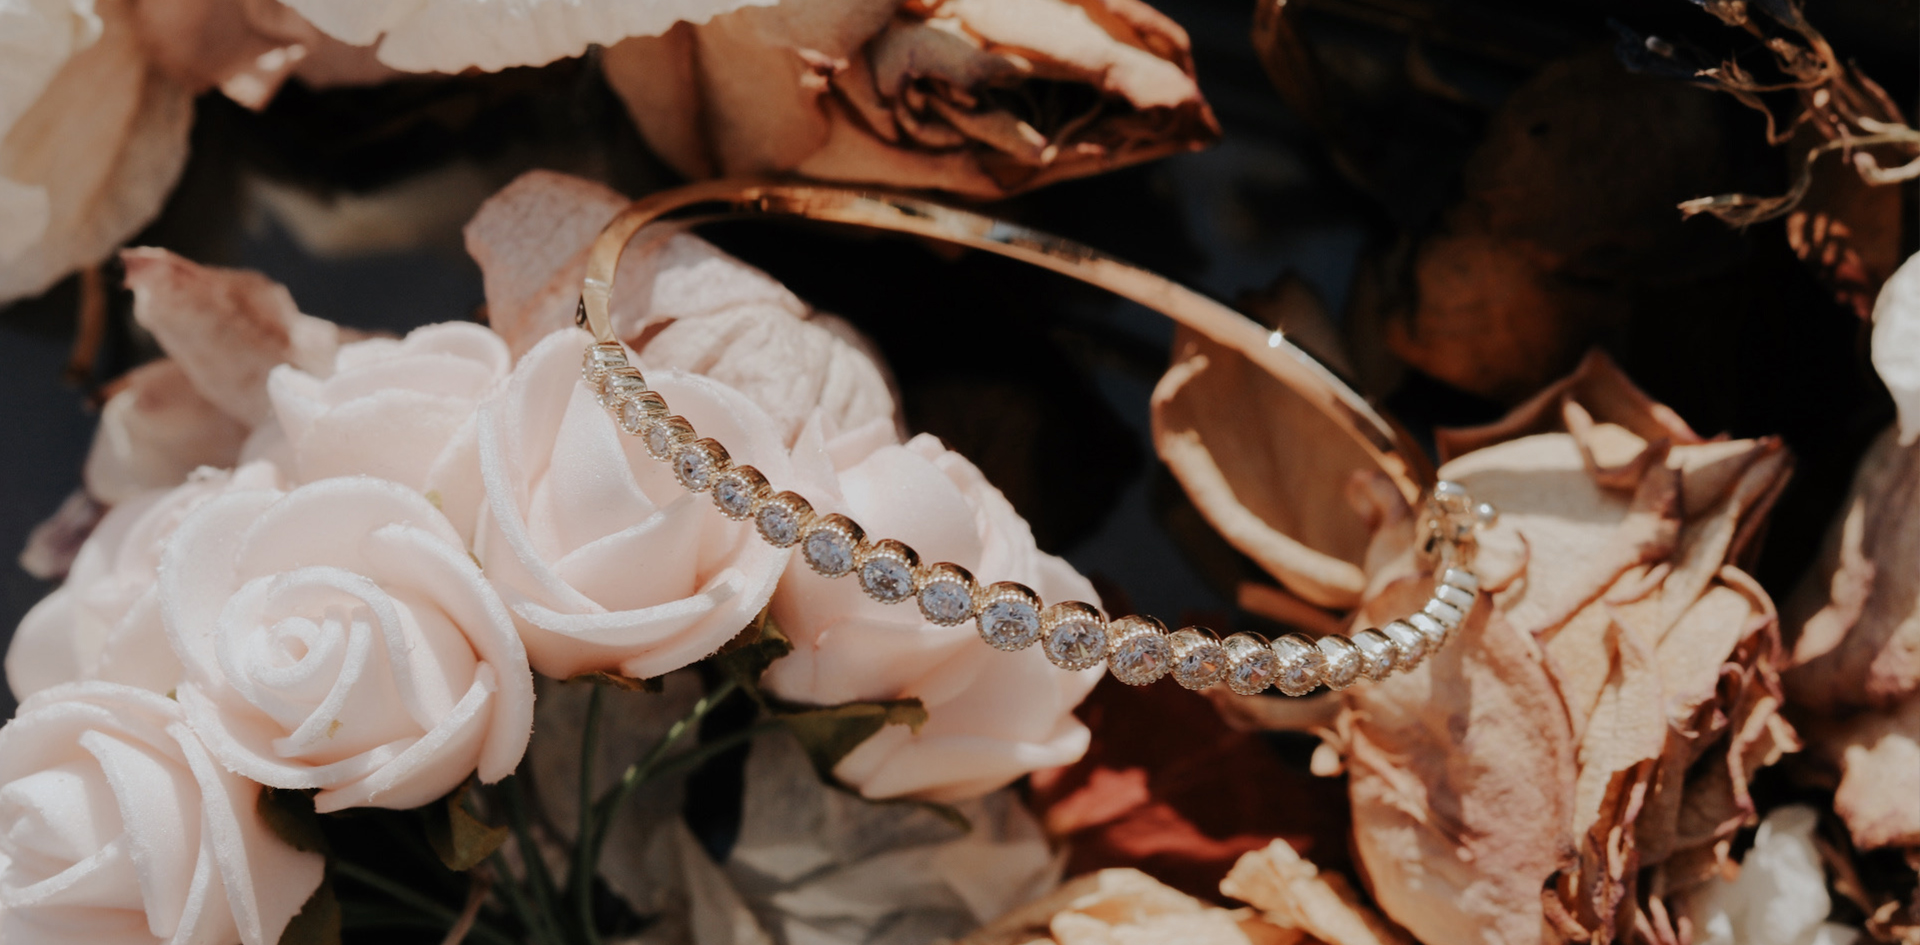 Complete your beauty with Swarovski Zirconia Bracelets